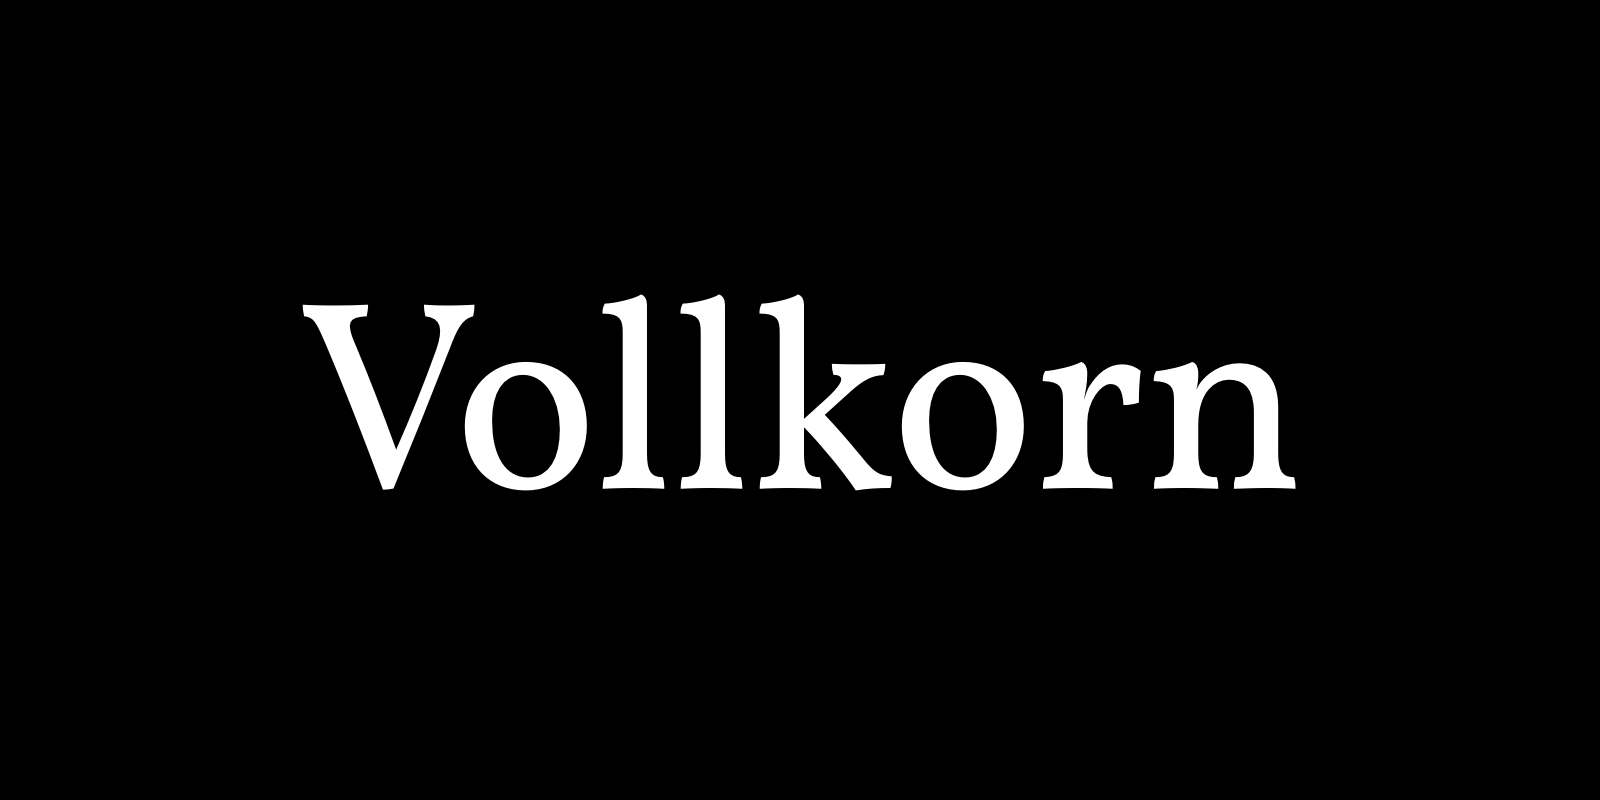 Vollkorn by Friedrich Althausen